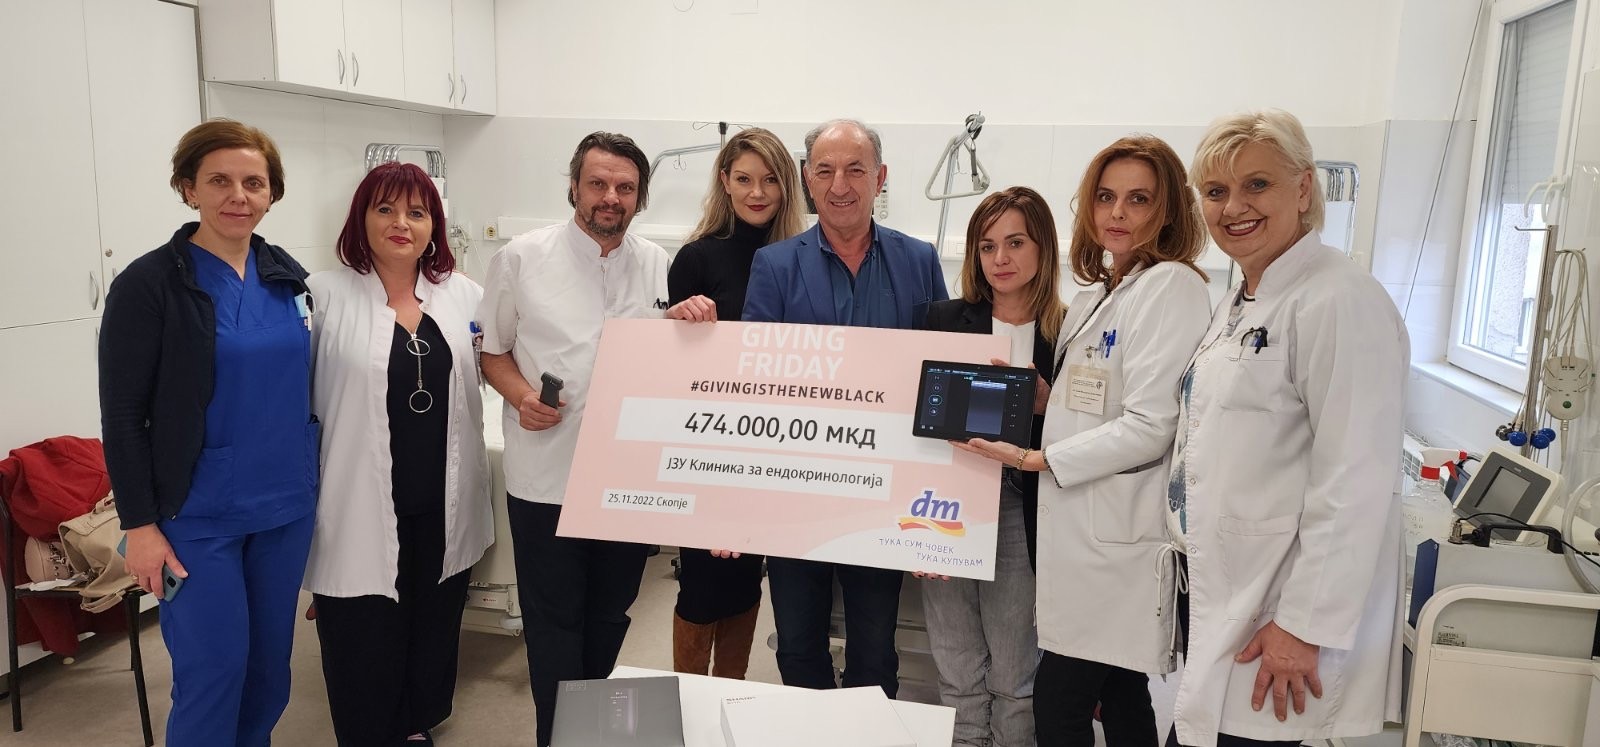 Наместо попусти, пример за хуманост: По повод Black Friday, компанијата дм дрогерие маркт донира 474.000 денари во ЈЗУ Универзитетска клиника за ендокринологија од Скопје!